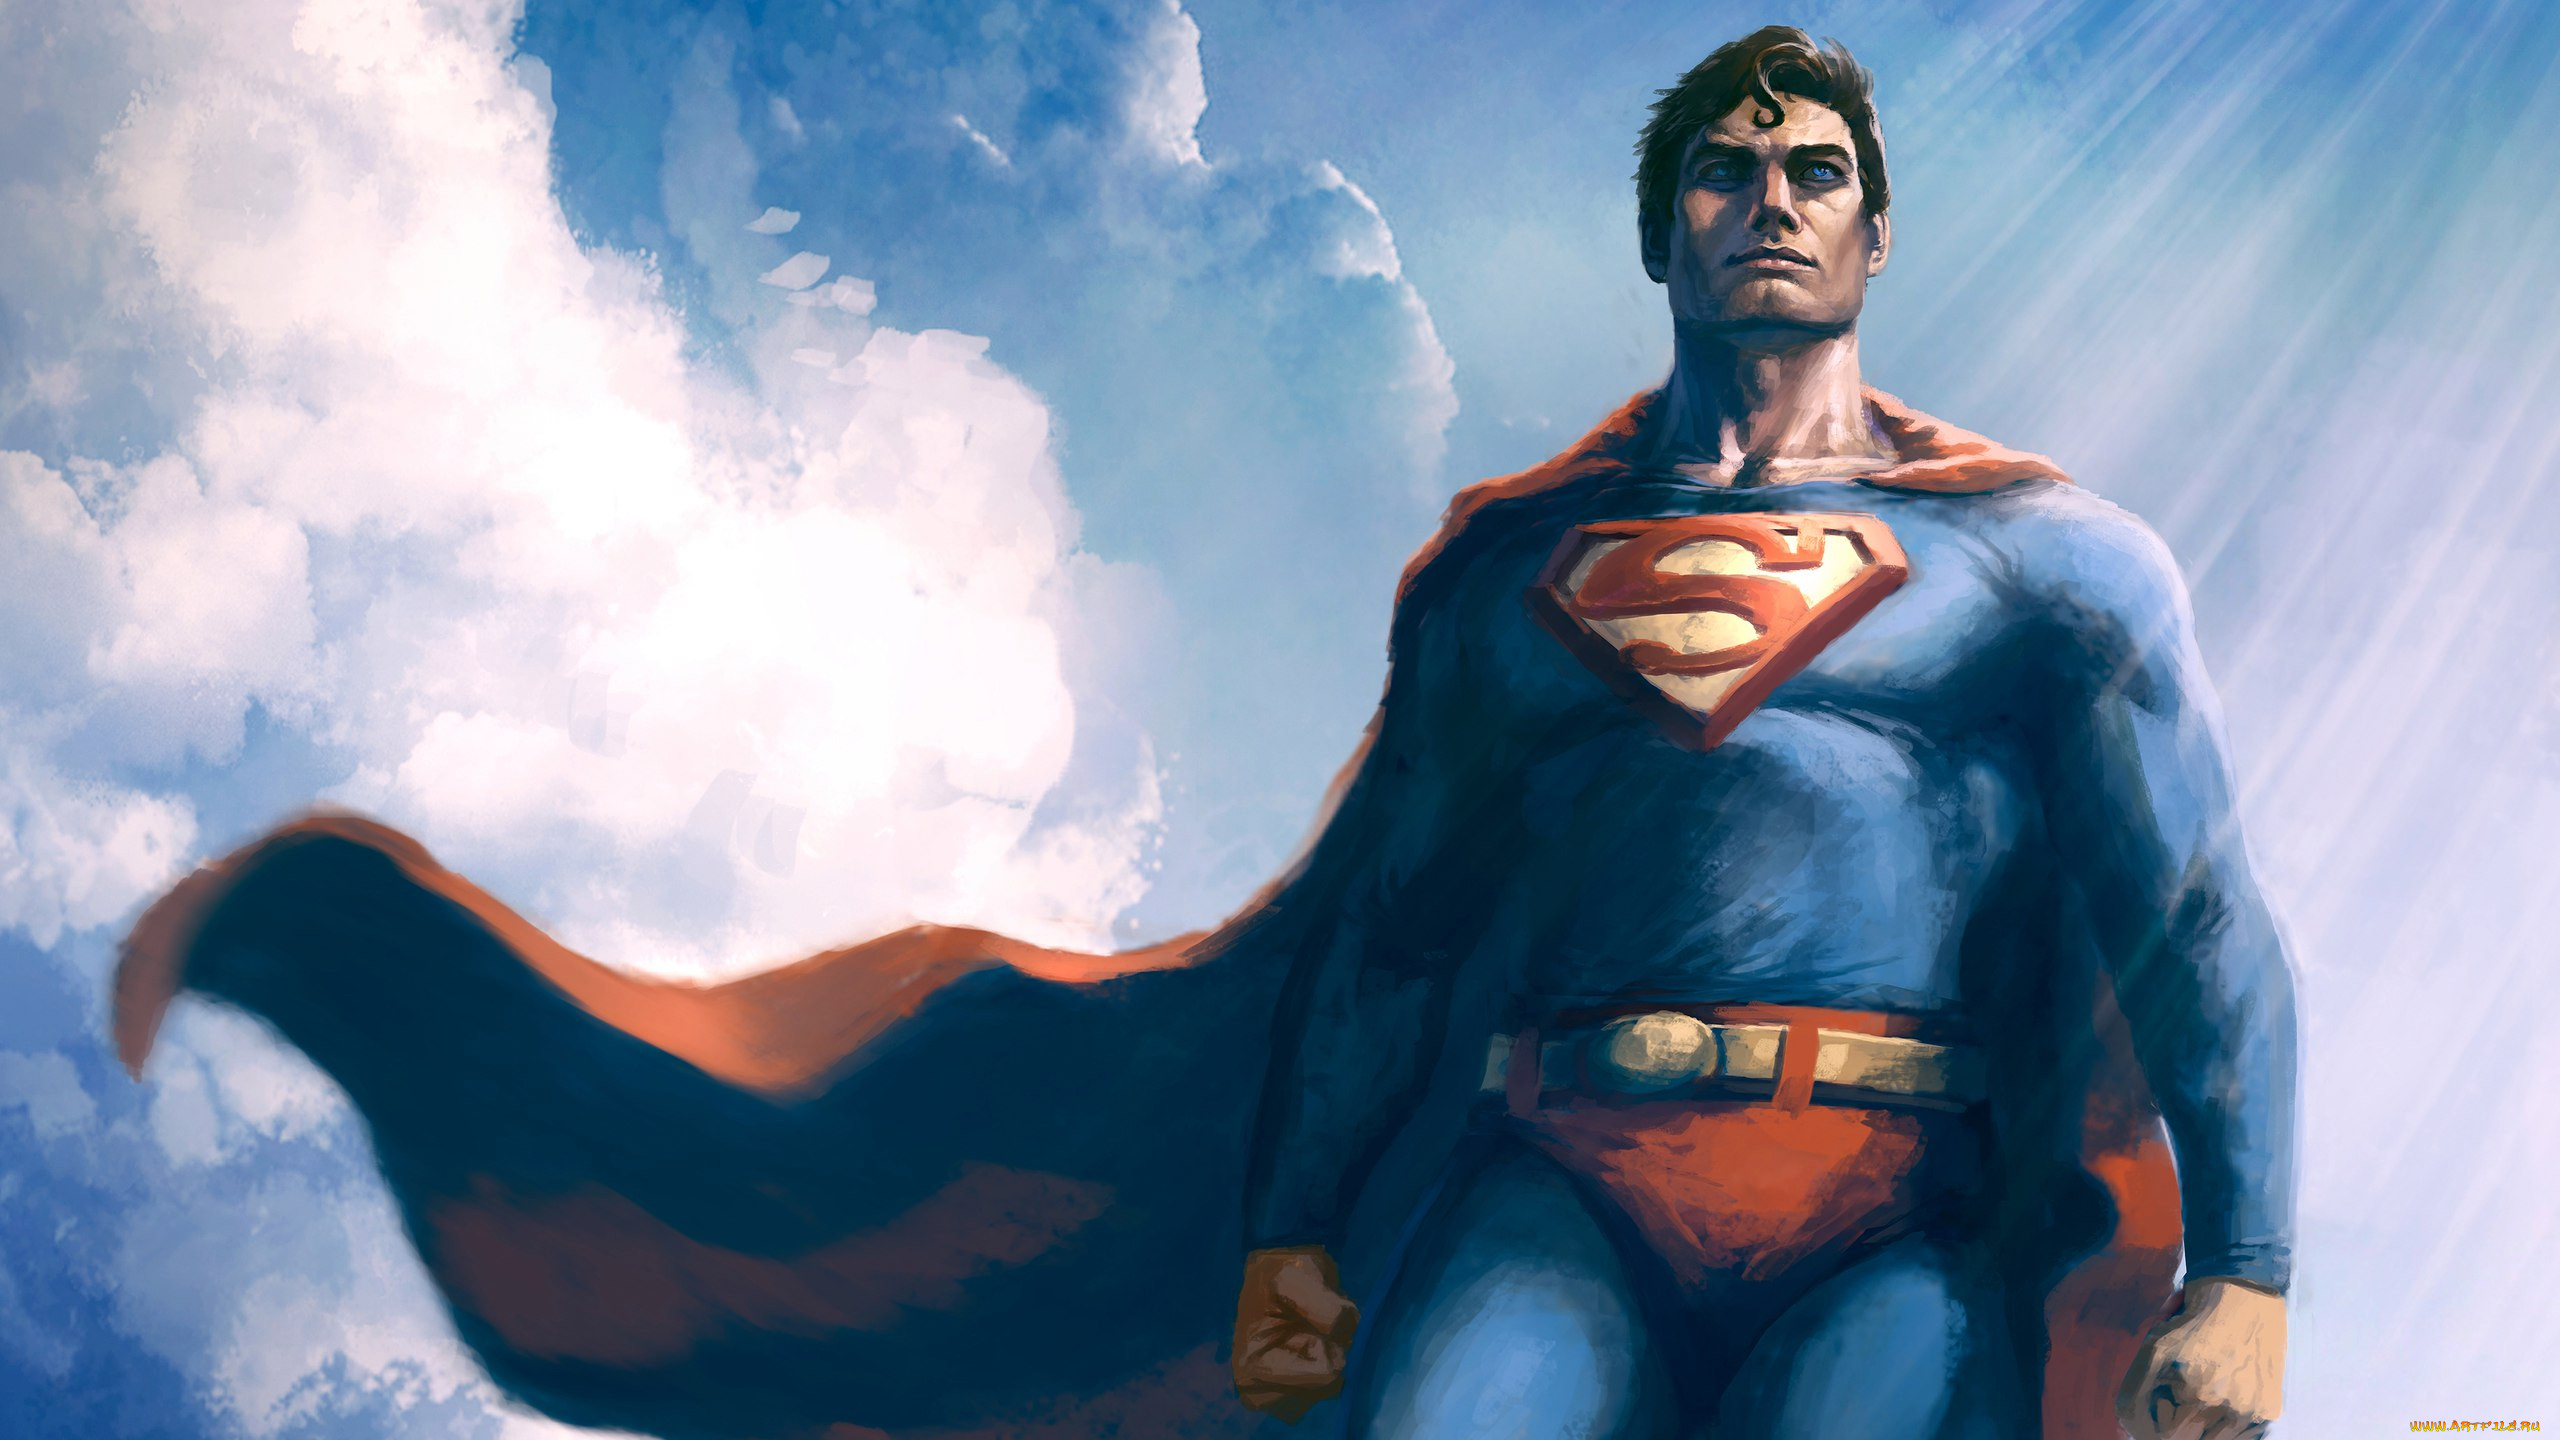 General 2560x1440 Superman superhero artwork